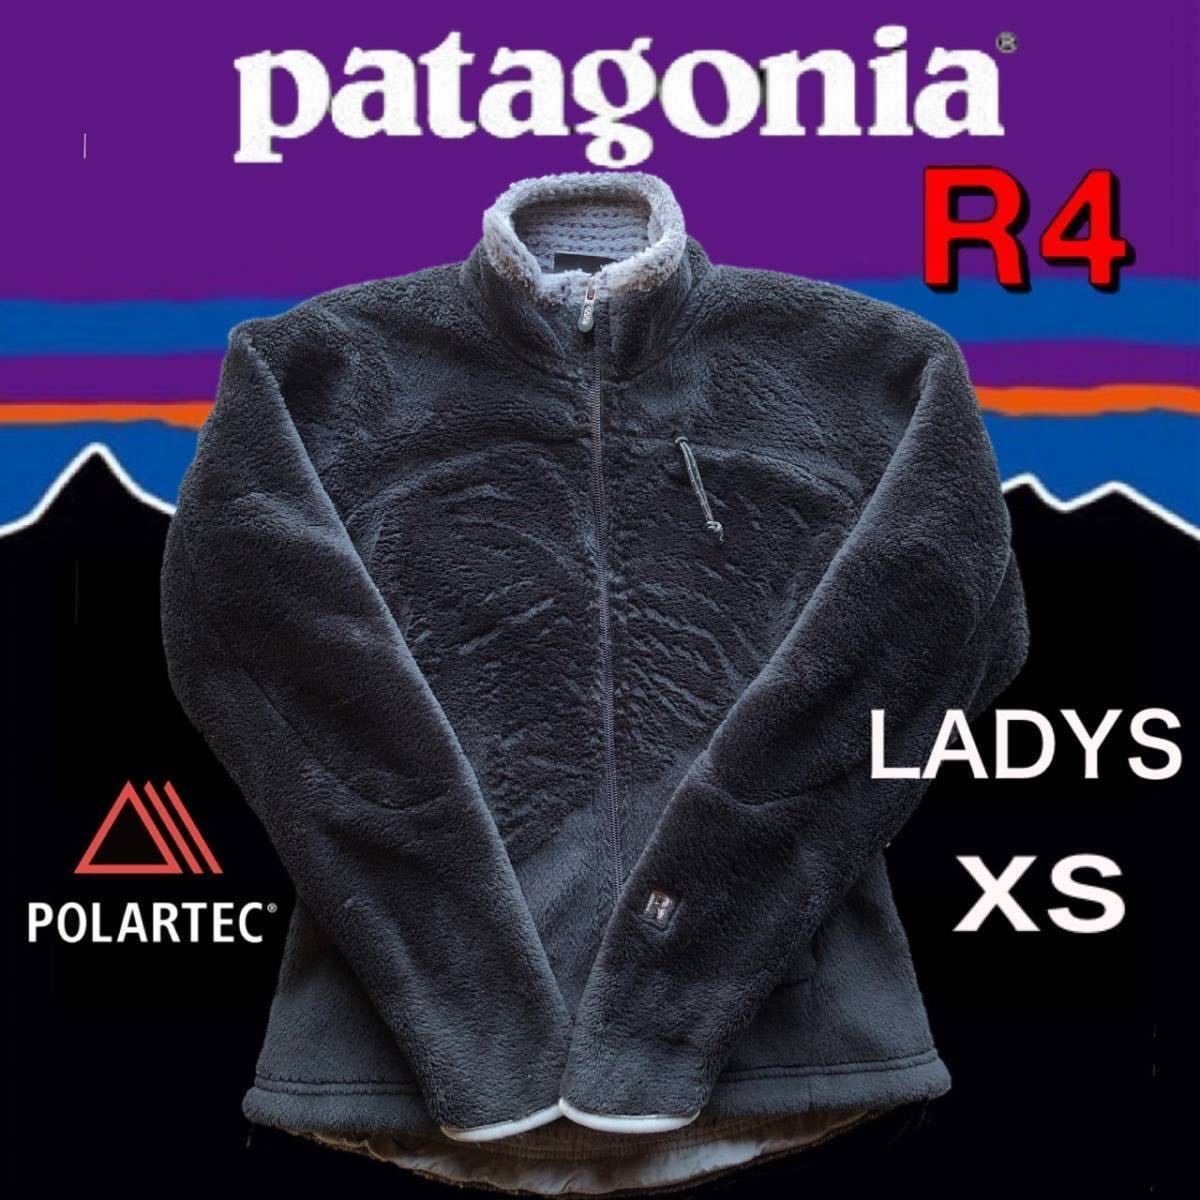 【美品】パタゴニア R4 ジャケット レディース XS ブラック 黒 廃盤 最高峰 最上位機種フリース ポーラテック実装 保温防寒防風patagonia